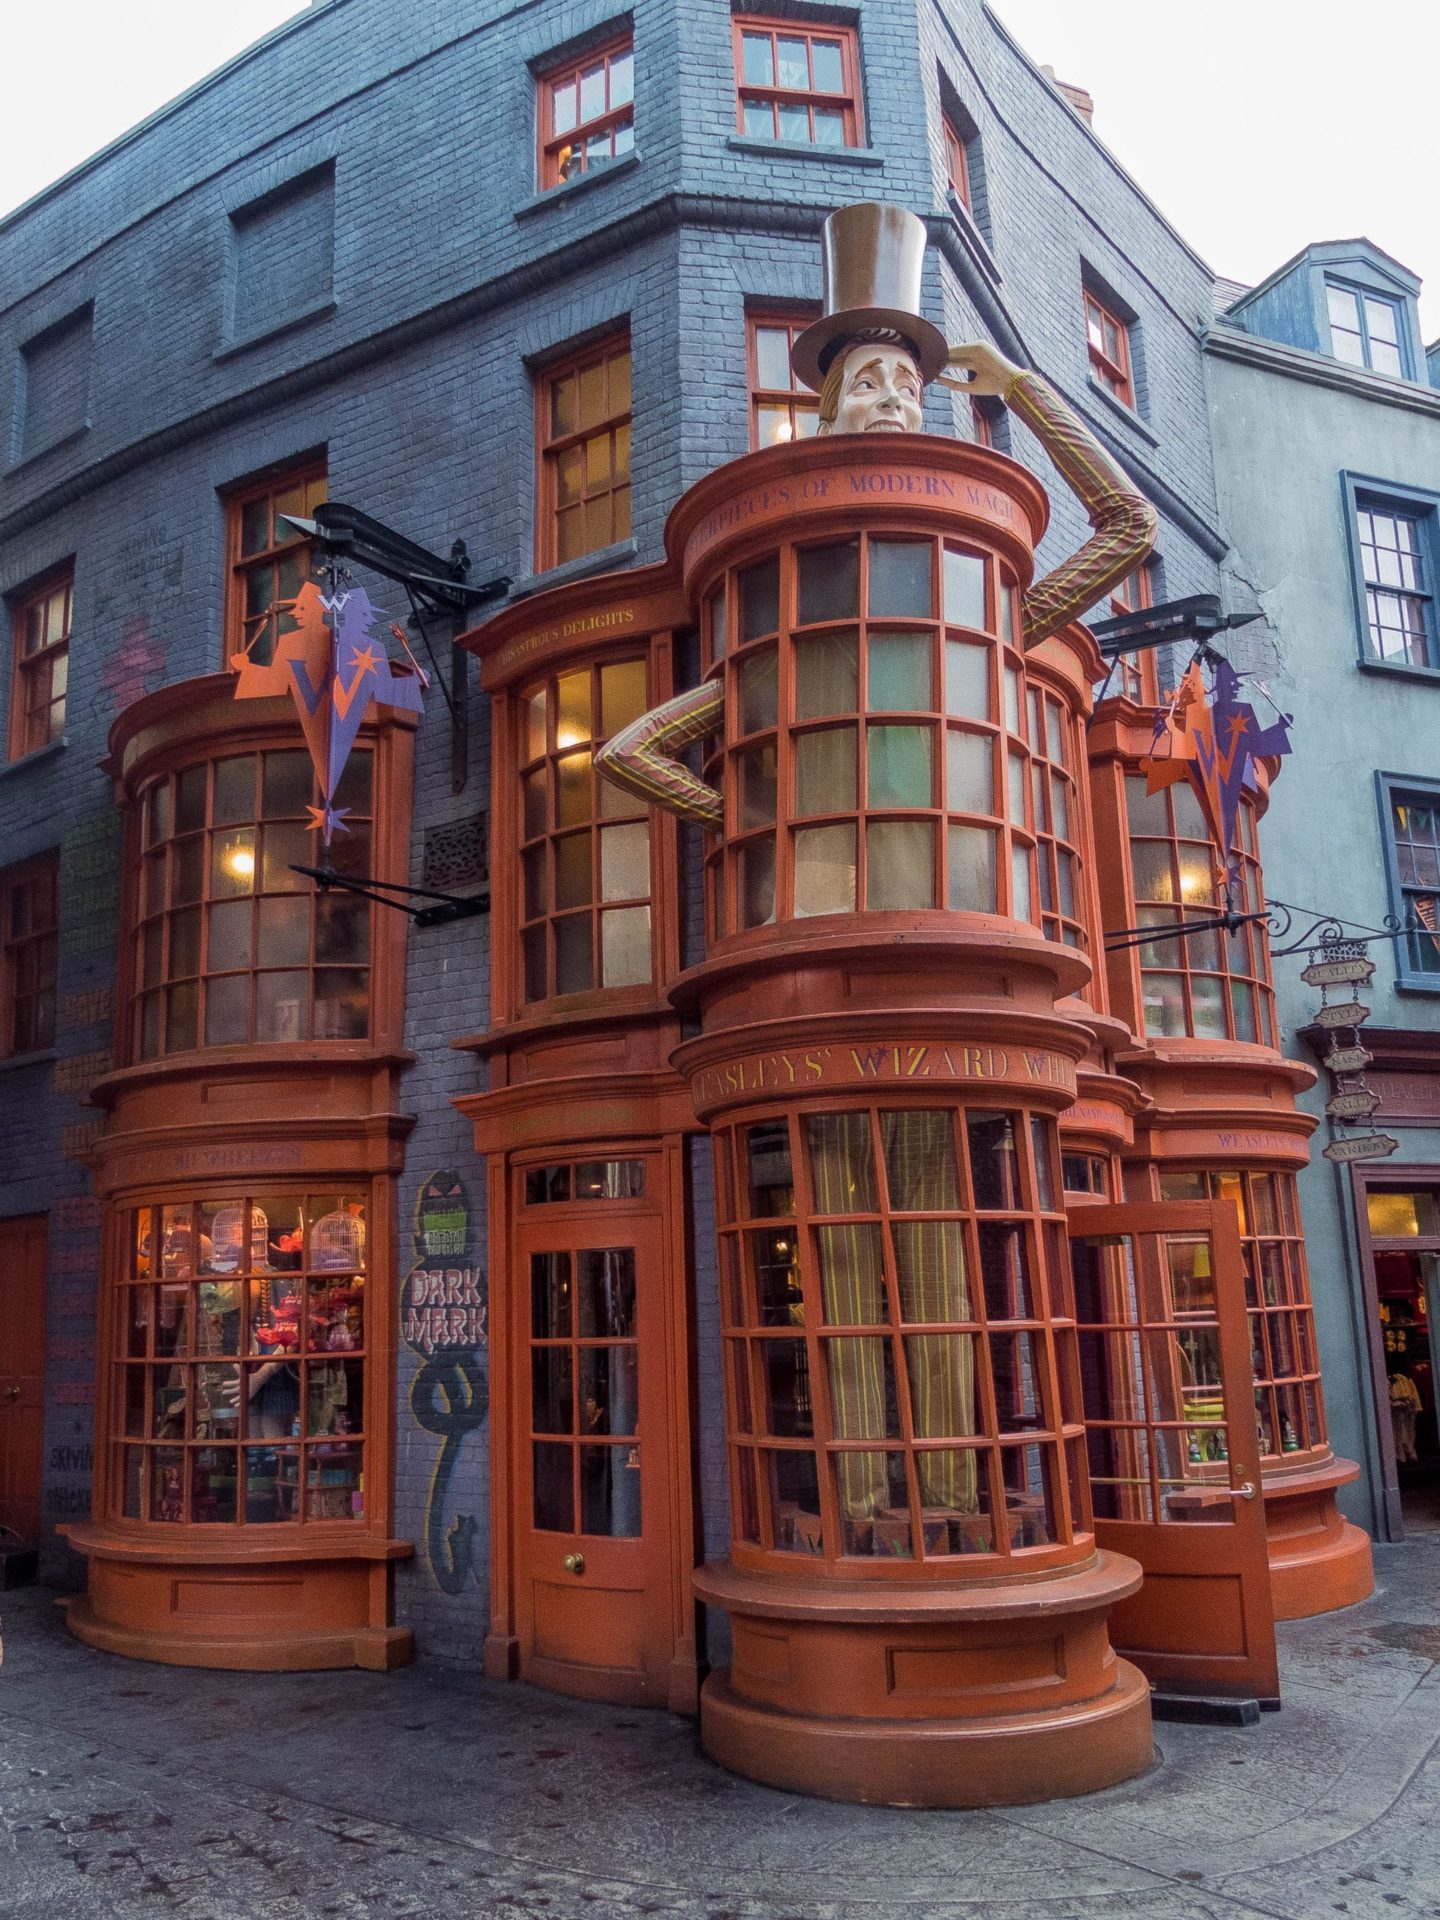 Universal Studios Weasleys Wizard Wheezes, the Wizarding World of Harry Potter